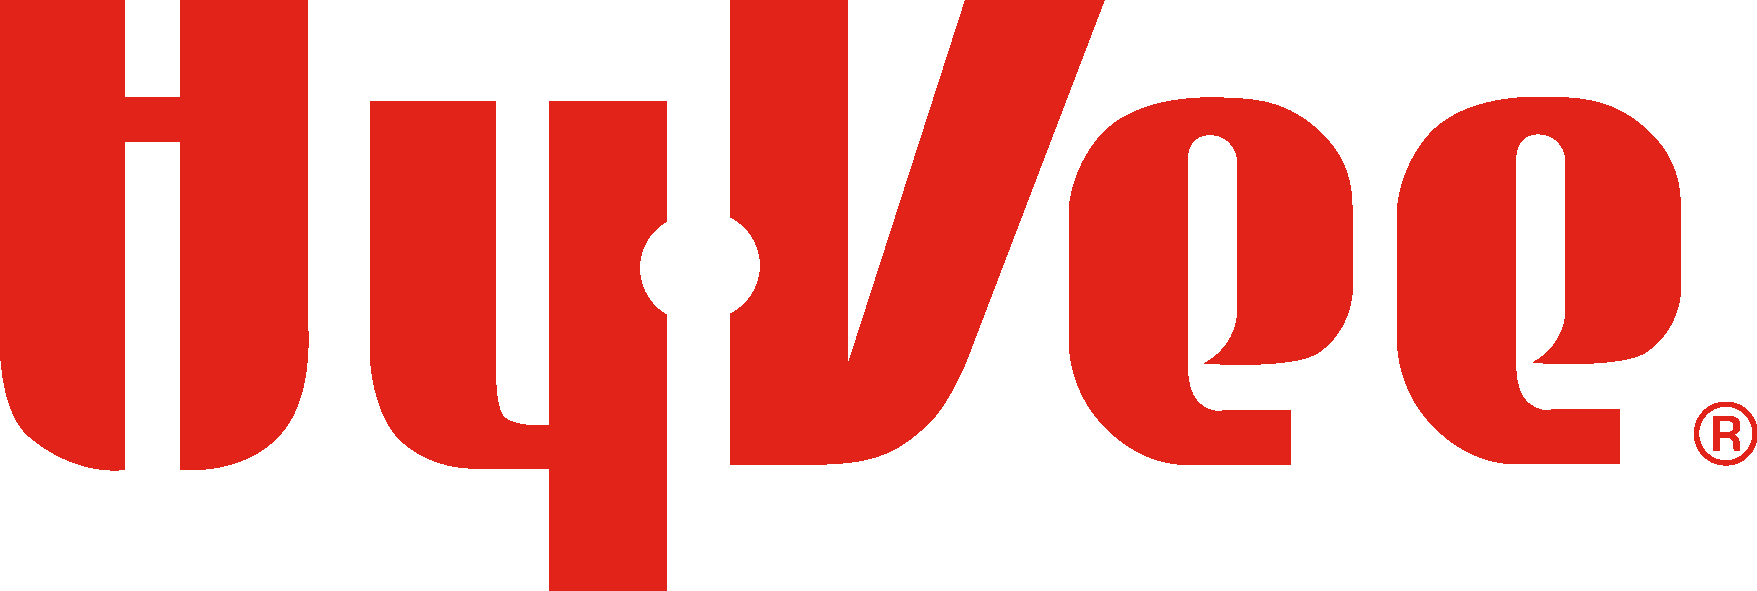 Hy vee Logo Download Vector